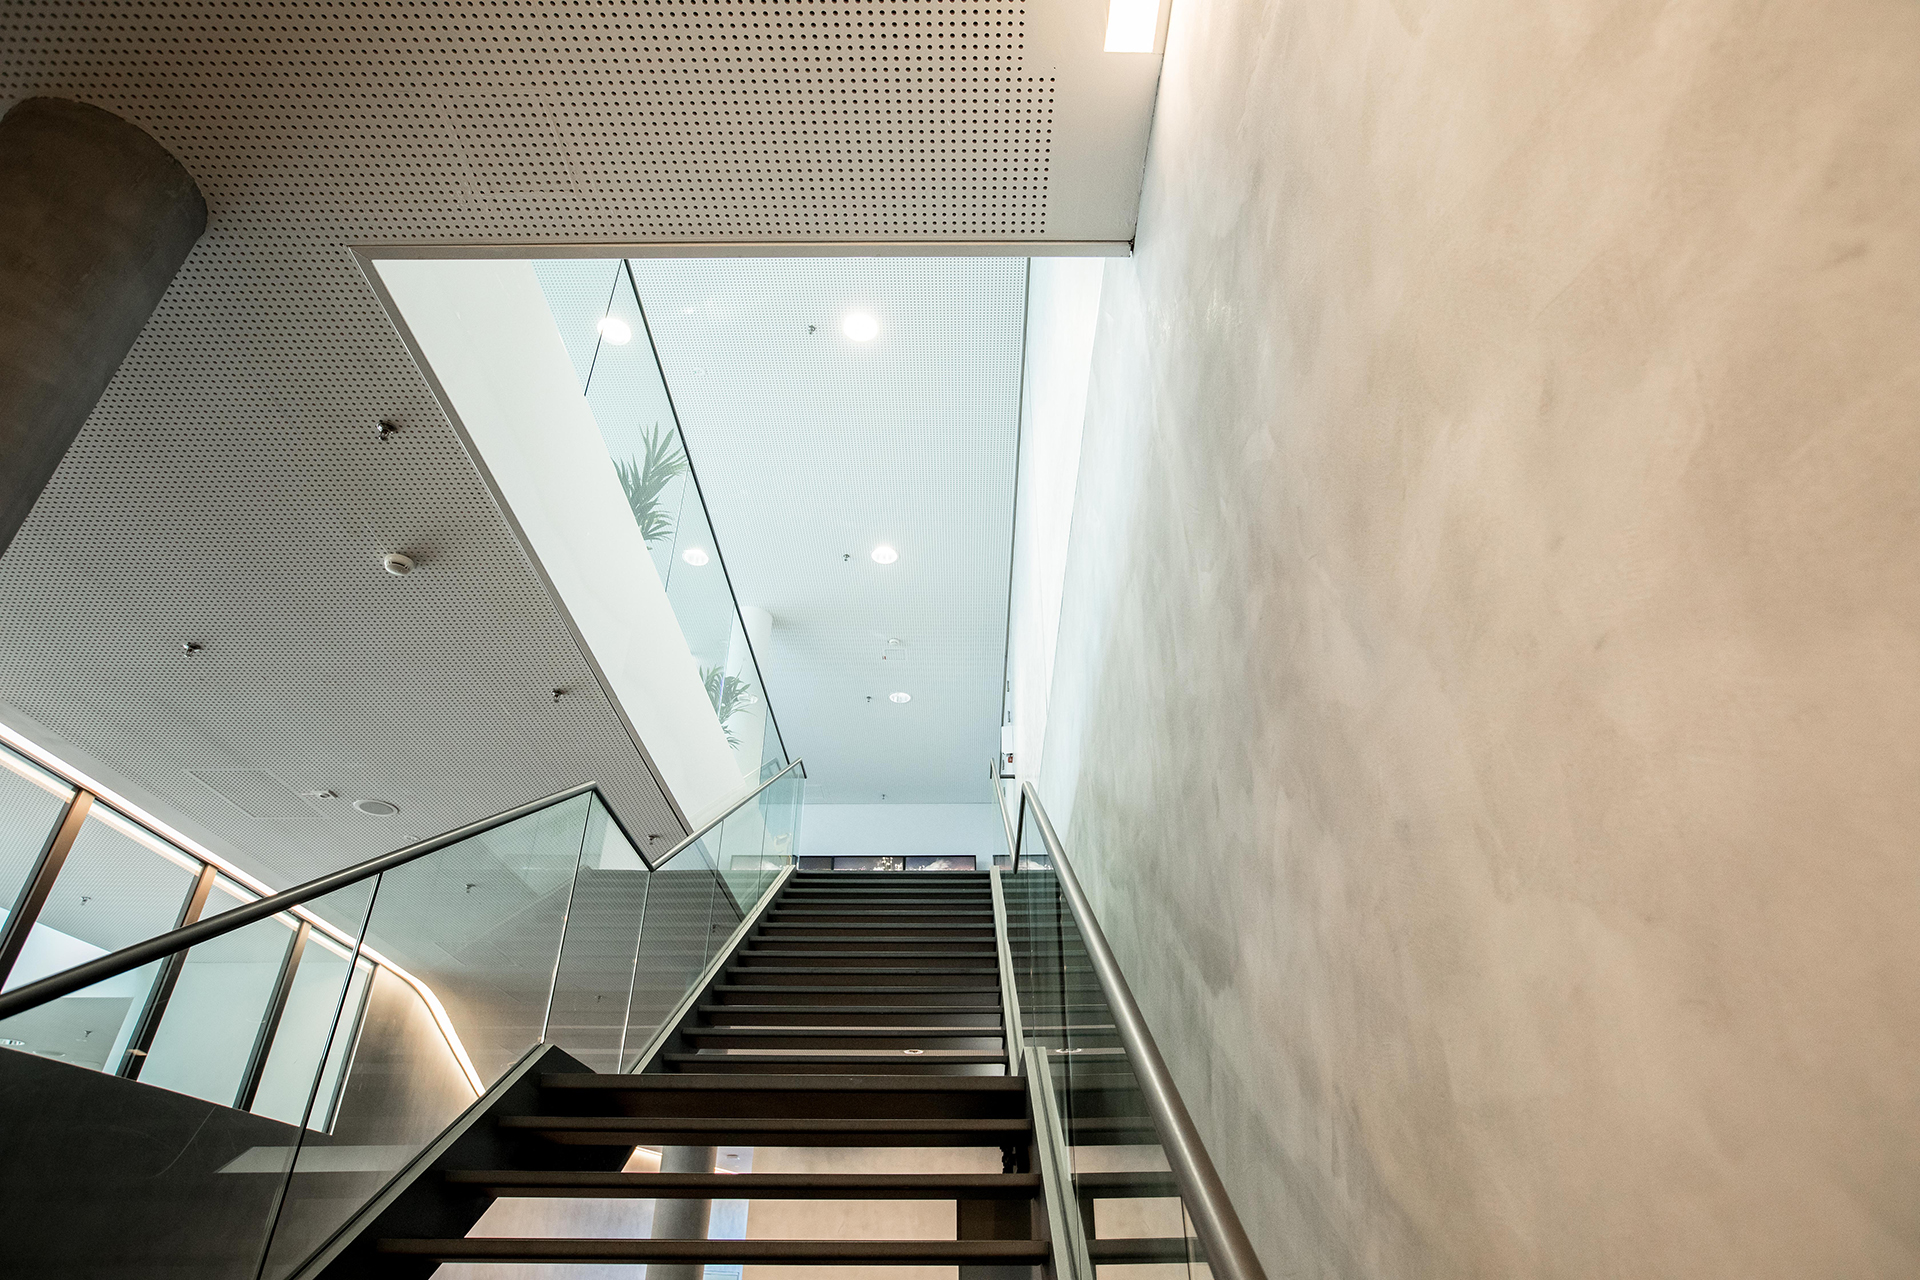 Blick auf eine moderne Treppe in einem Gebäude mit Betonwänden und einer Decke mit perforierten Metallplatten. Natürliches Licht fällt durch ein Oberlicht ein, und man sieht das Grün von Pflanzen im oberen Stockwerk.